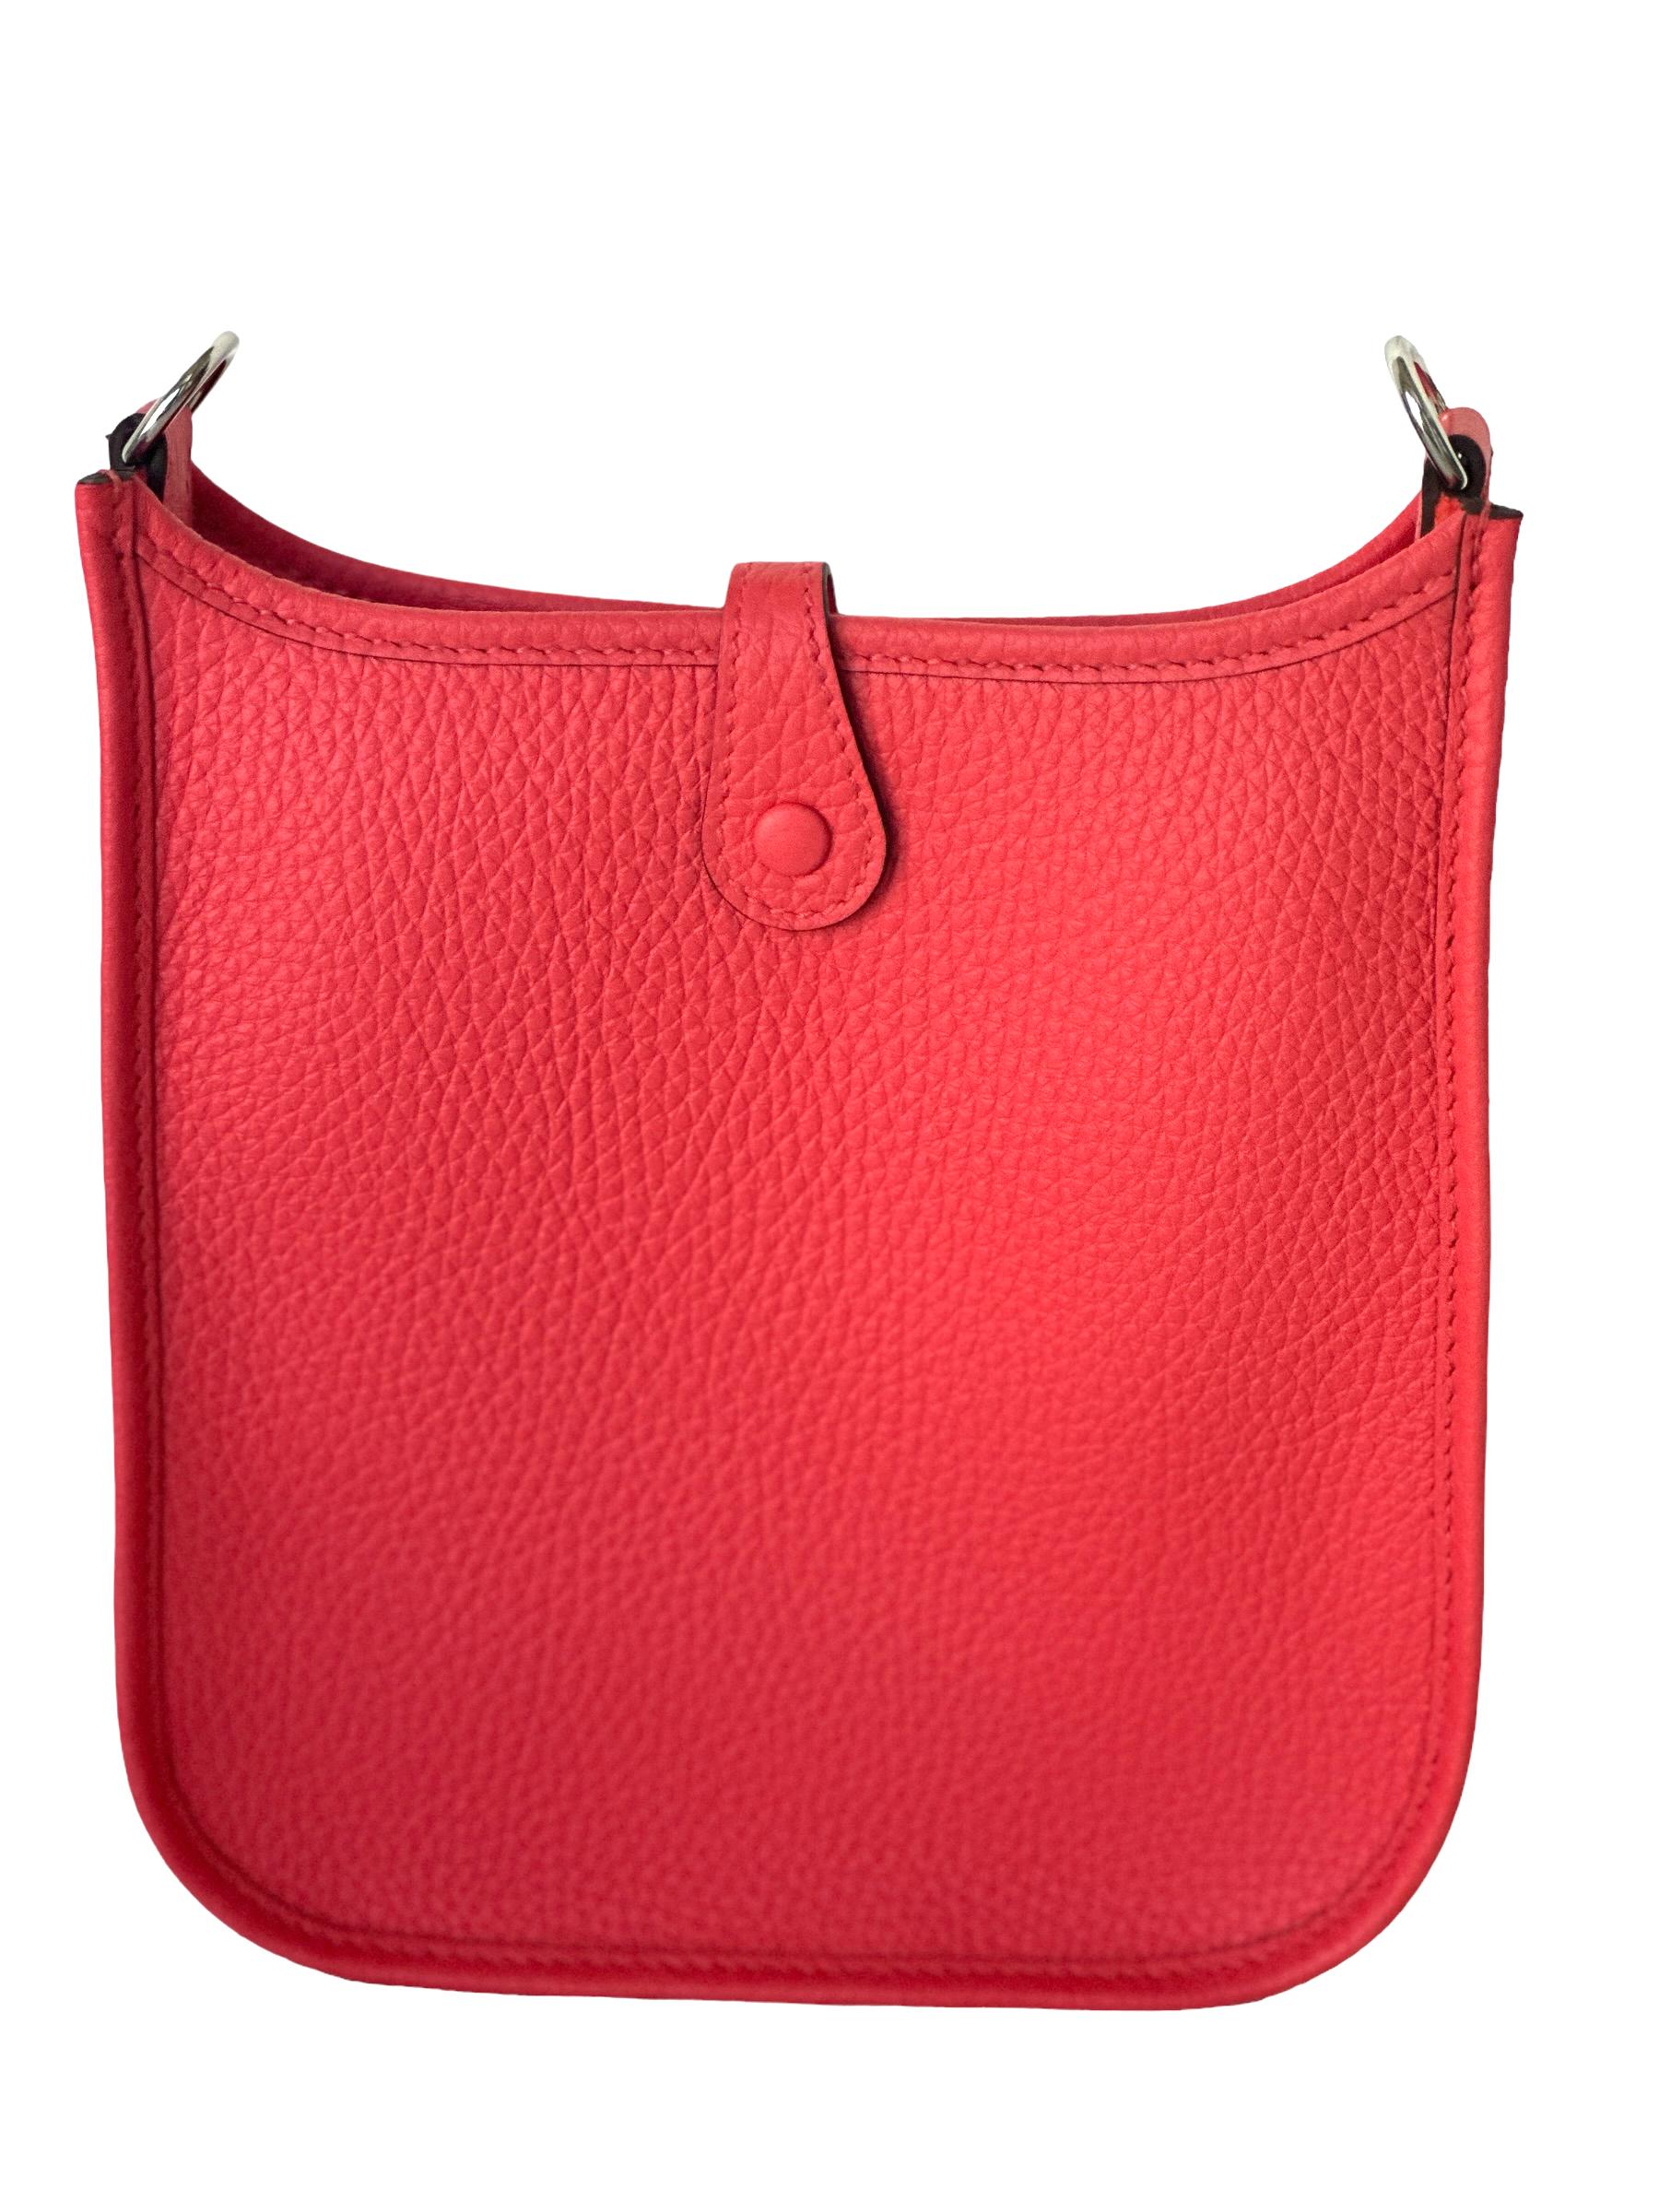 Hermès Evelyne 16 TPM Rose Texas Tasche AMAZONE Limited Edition Riemen für Damen oder Herren